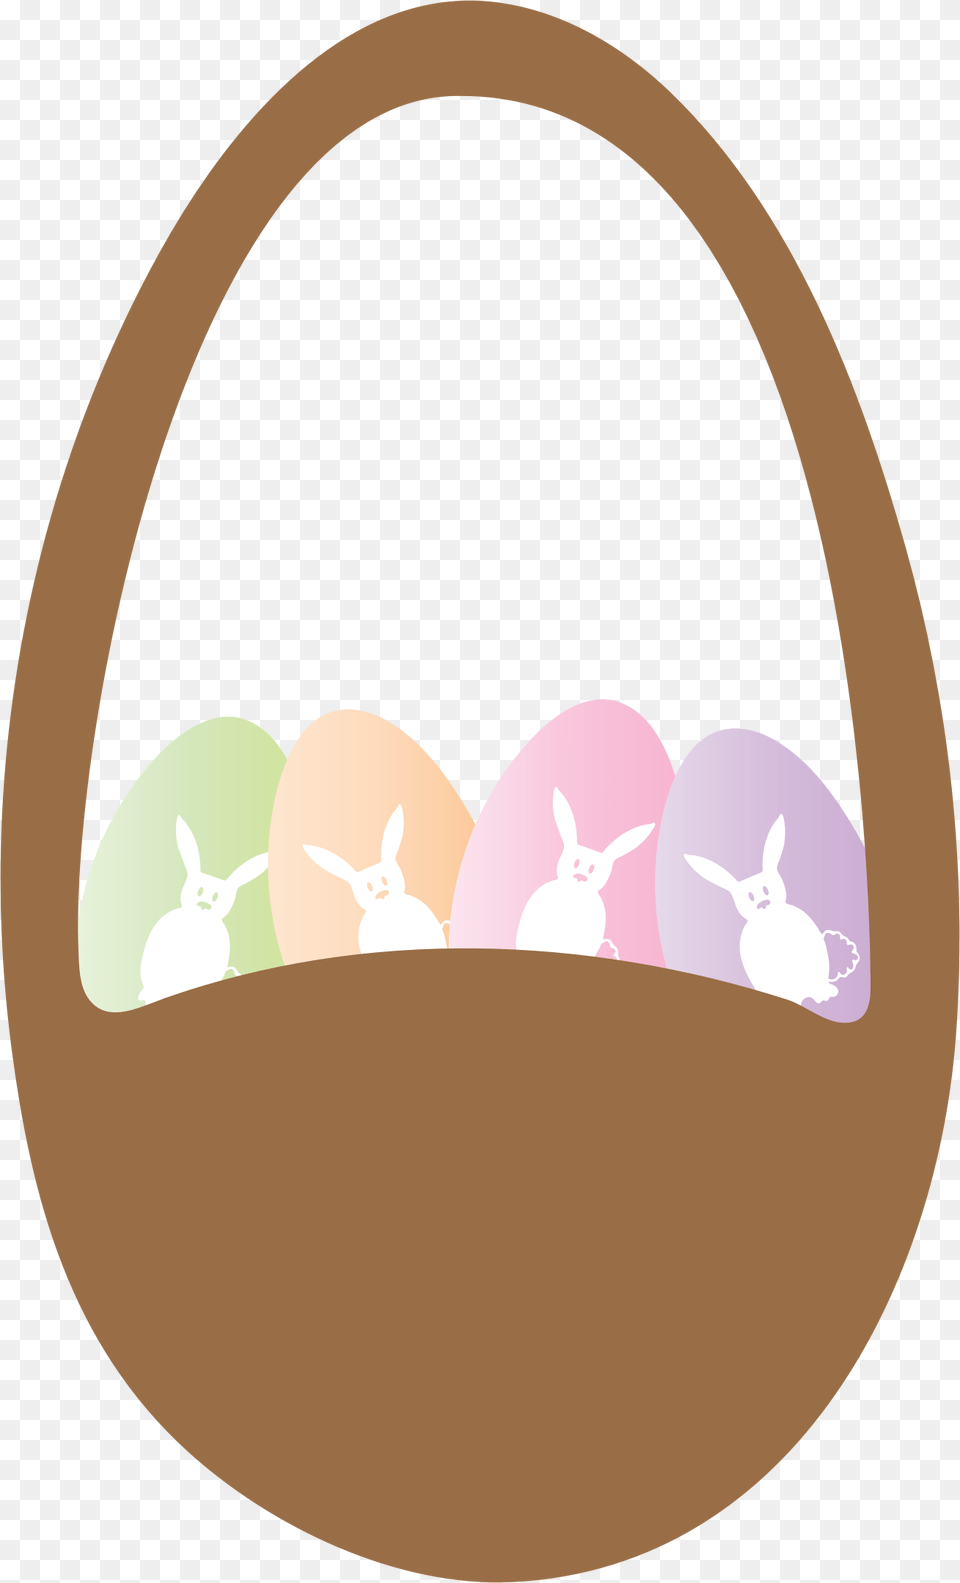 Easter Basket And Eggs Clip Arts Illustration, Accessories, Handbag, Bag, Egg Free Png